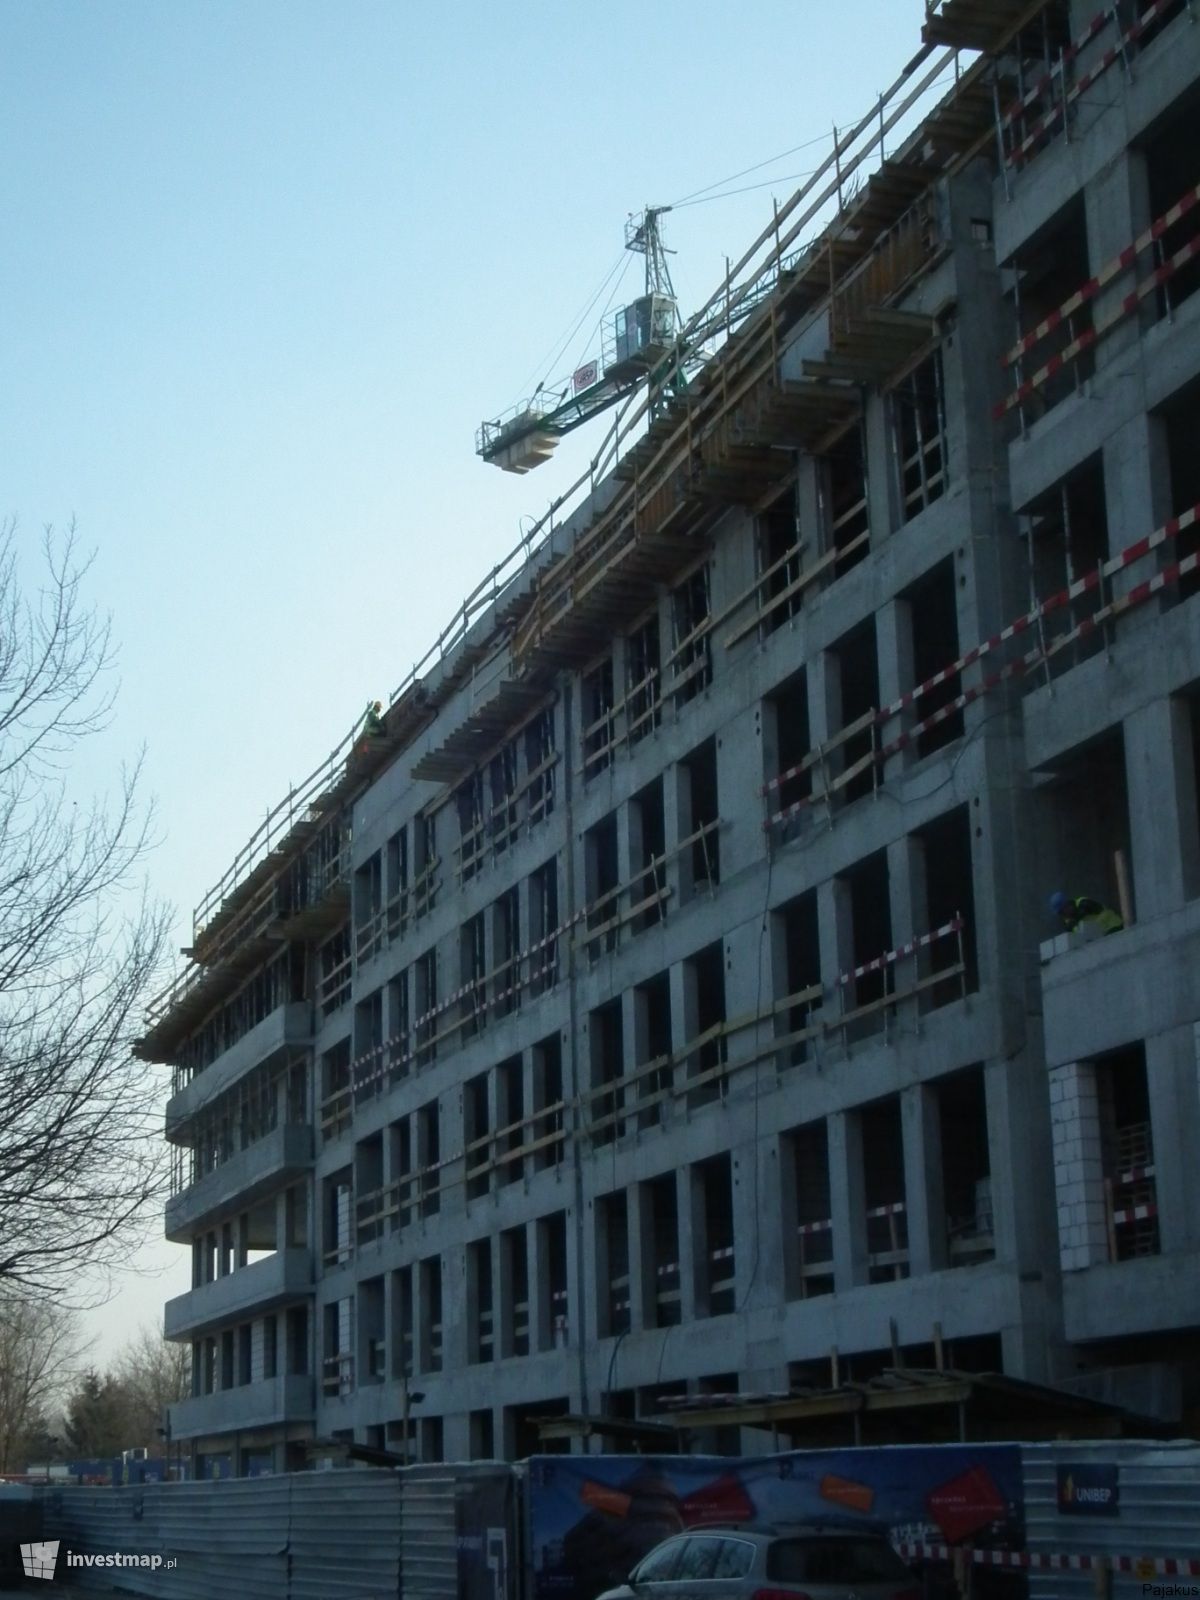 Zdjęcie Apartamentowce przy Krowiej 6 i Sierakowskiego 5 (Port Praski) fot. Pajakus 